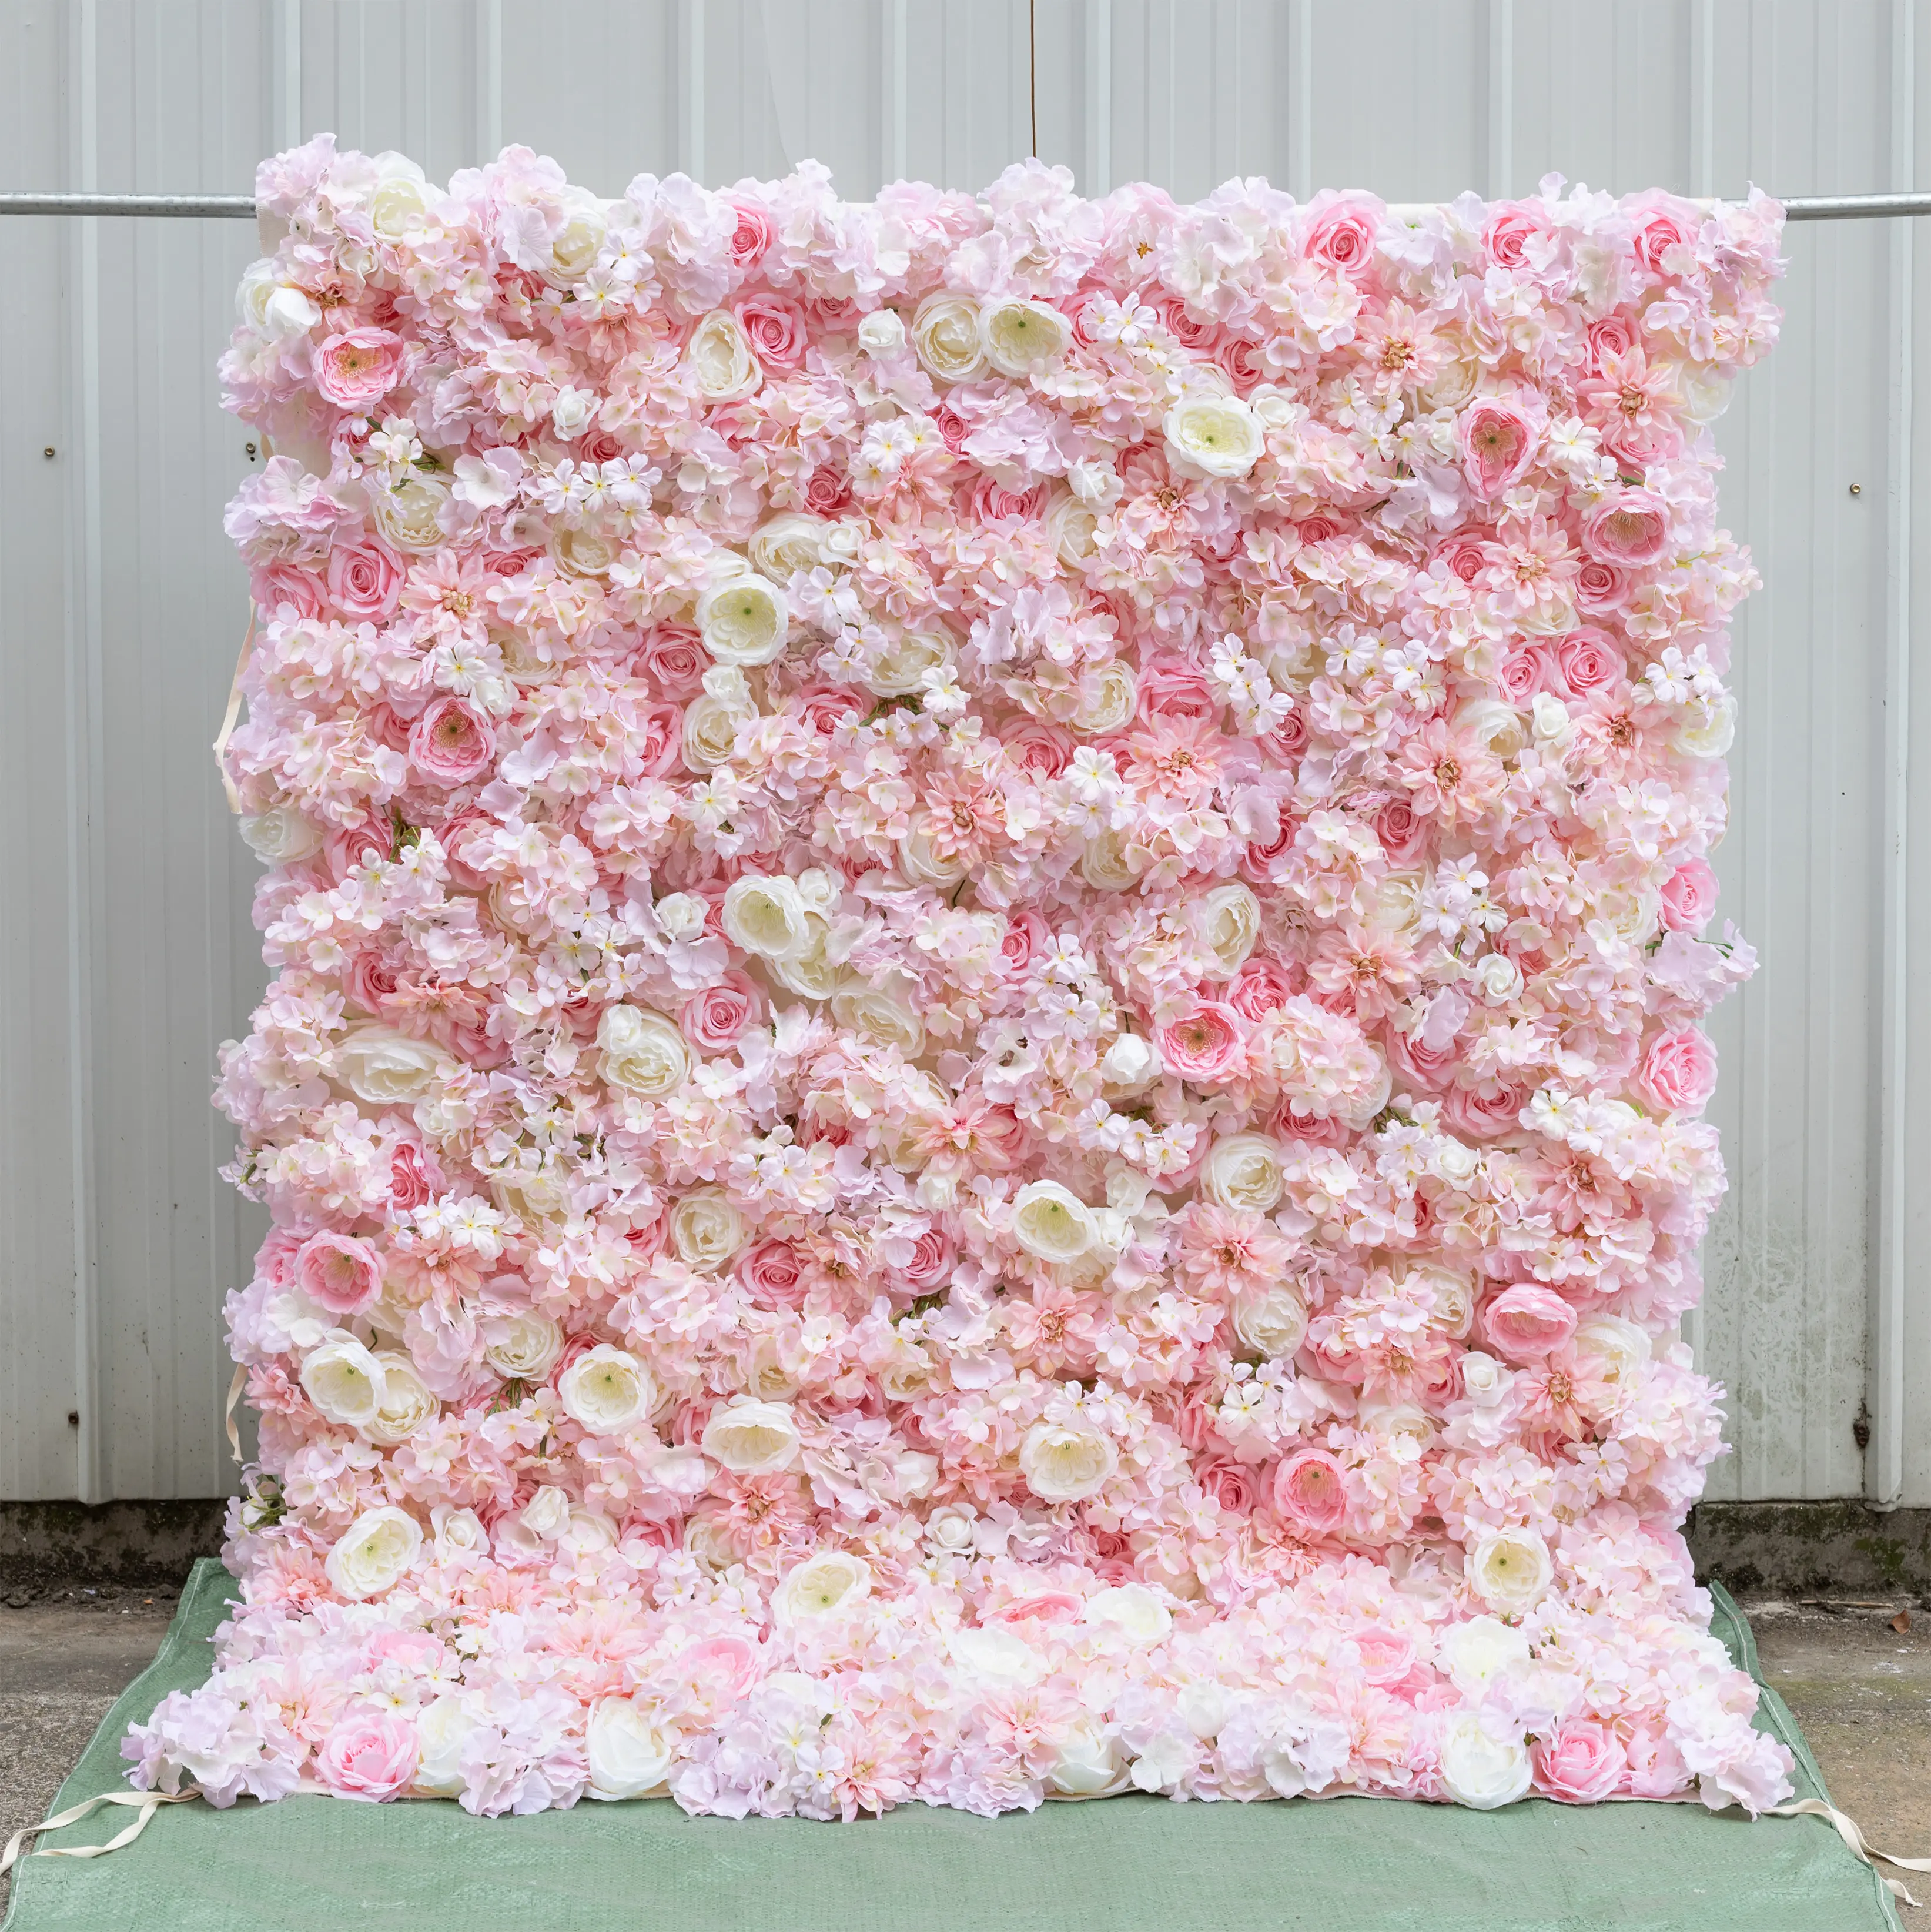 Fondo de pared de flores artificiales, panel floral de seda 3D para fondo de foto fiesta en casa para otra decoración de boda